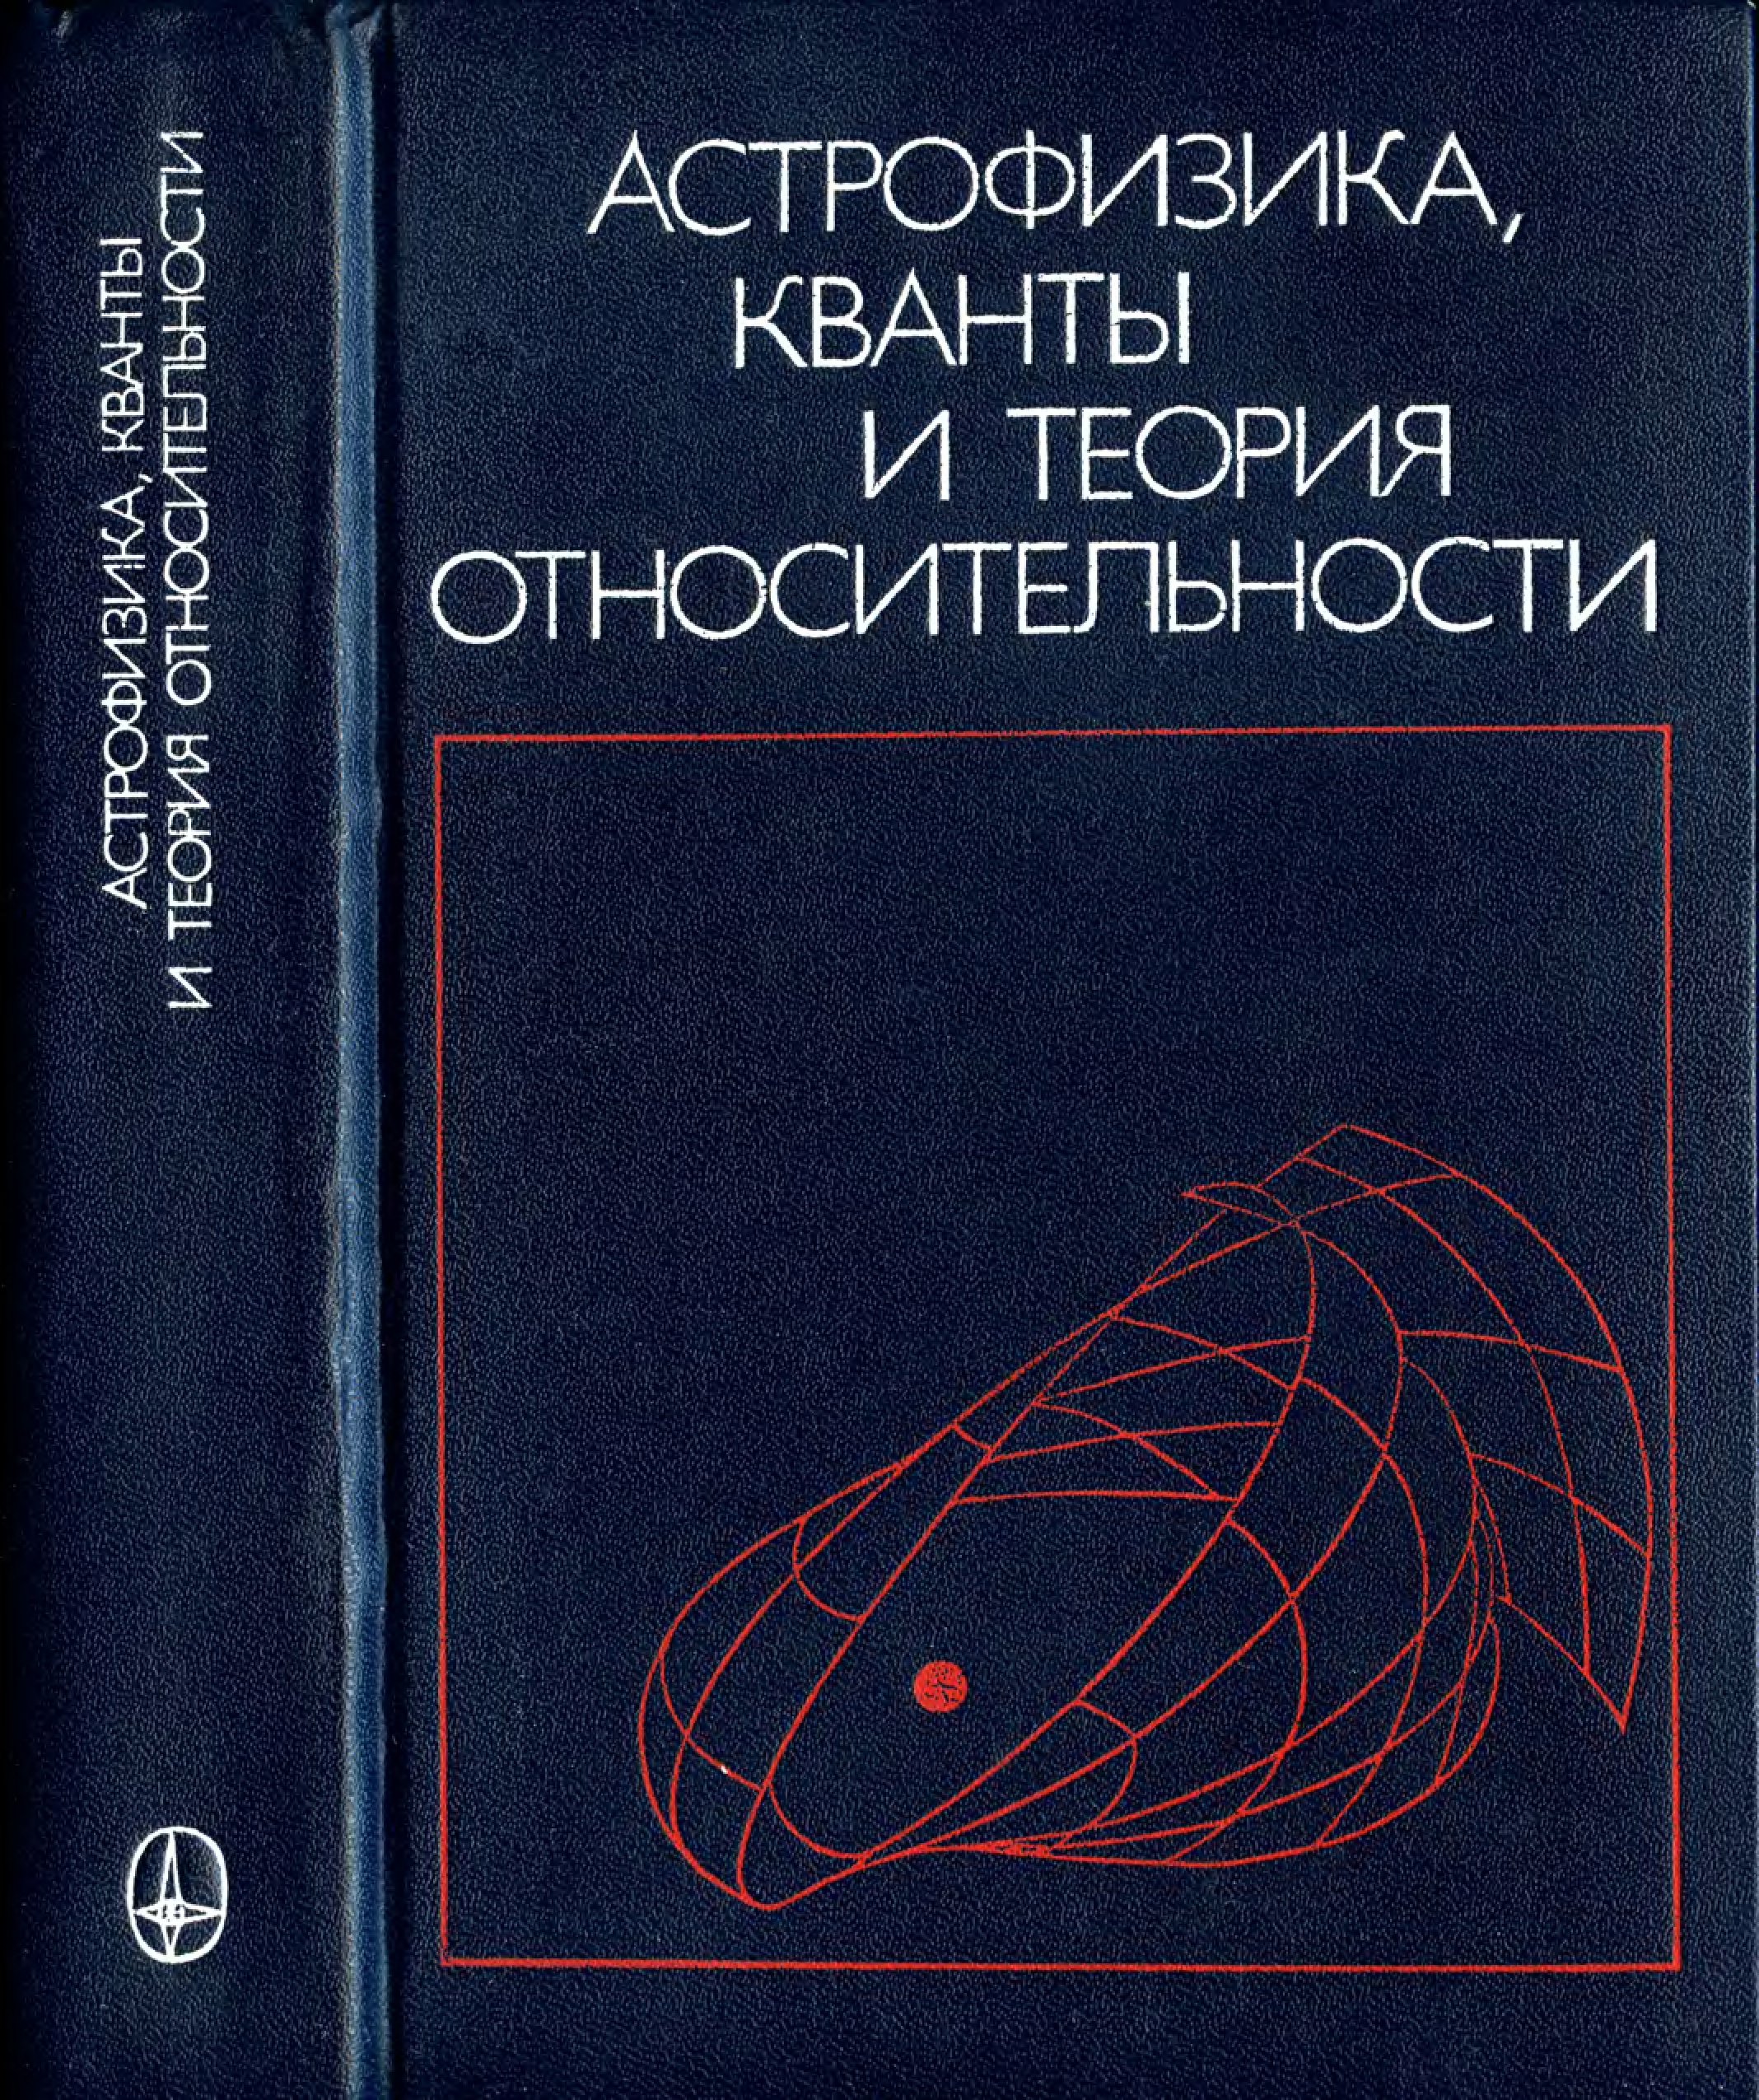 Книги астрофизиков. Книги по астрофизике. Теоретическая астрофизика. Астрофизика книга. Теоретическая астрофизика книги.